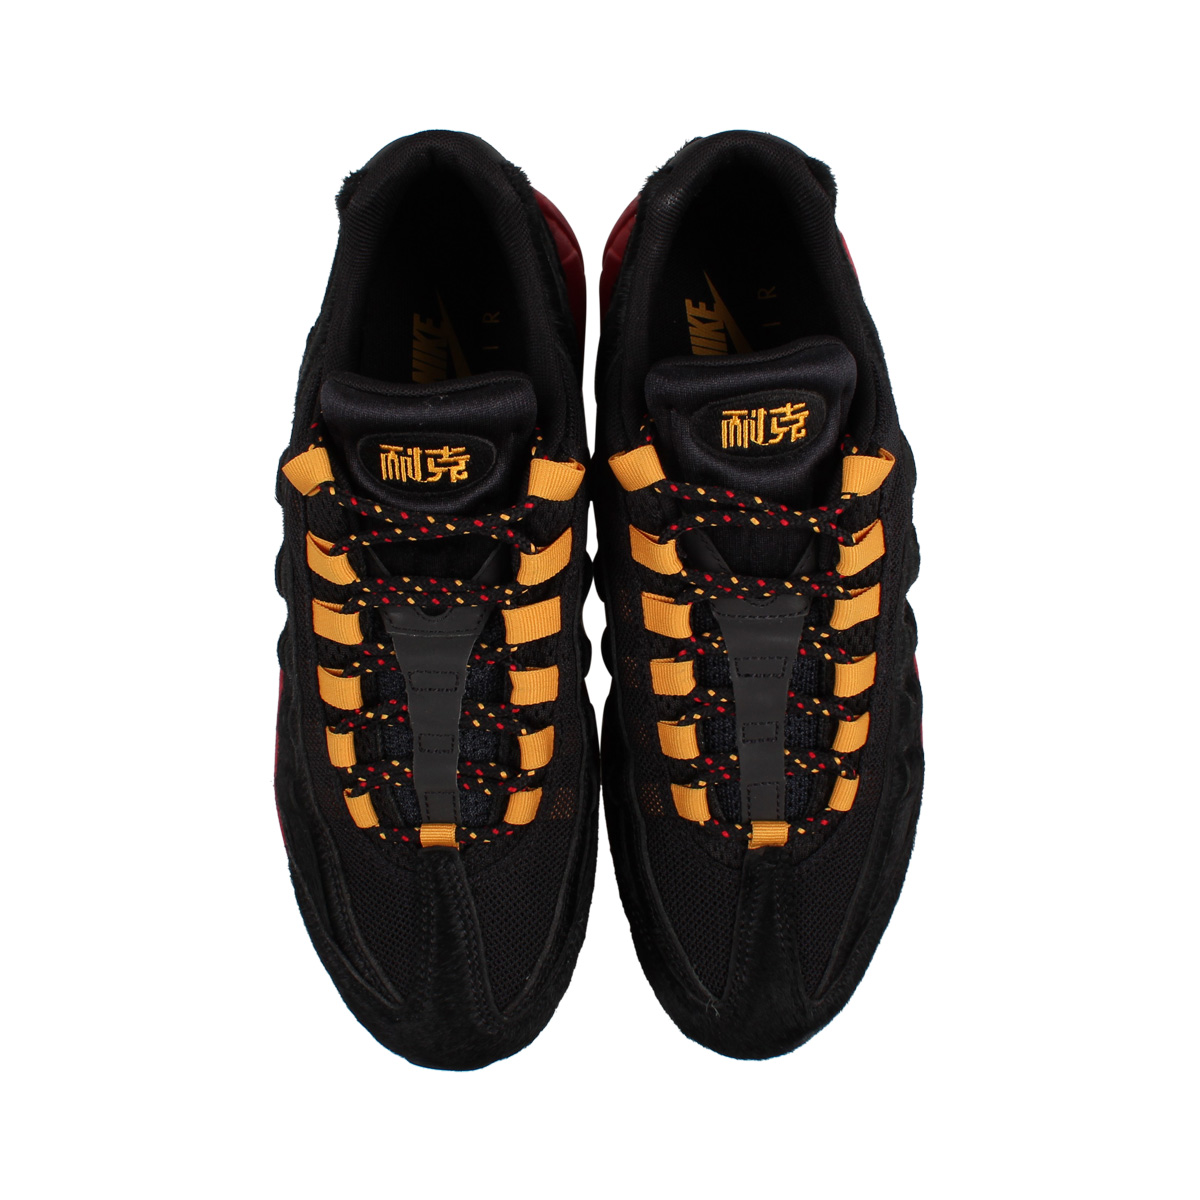 楽天市場 Nike ナイキ エアマックス95 スニーカー メンズ Air Max 95 ブラック 黒 Ci0228 067 シュガーオンラインショップ